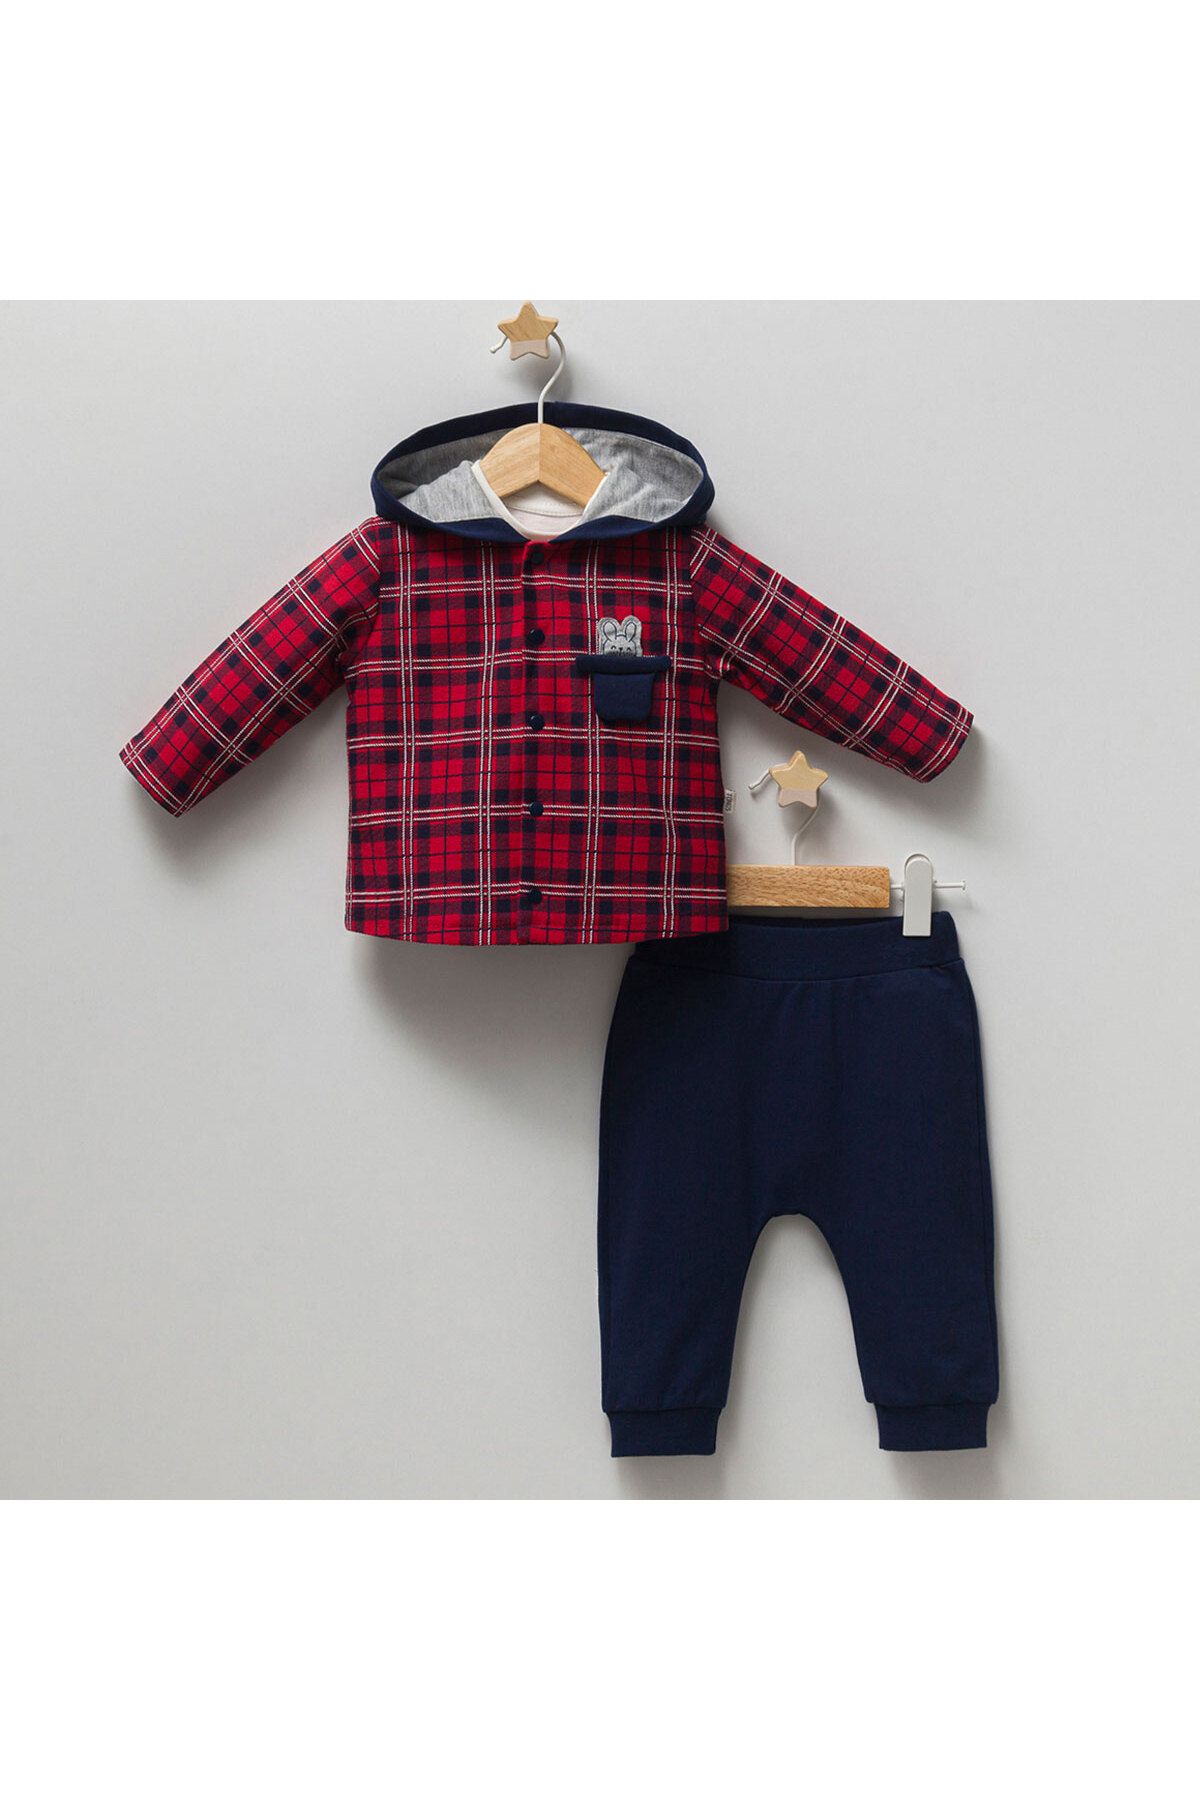 DIDuStore Klasik Ekose Ceket ve Şık Pantolonlu Ünisex Bebek Giyim Takımı